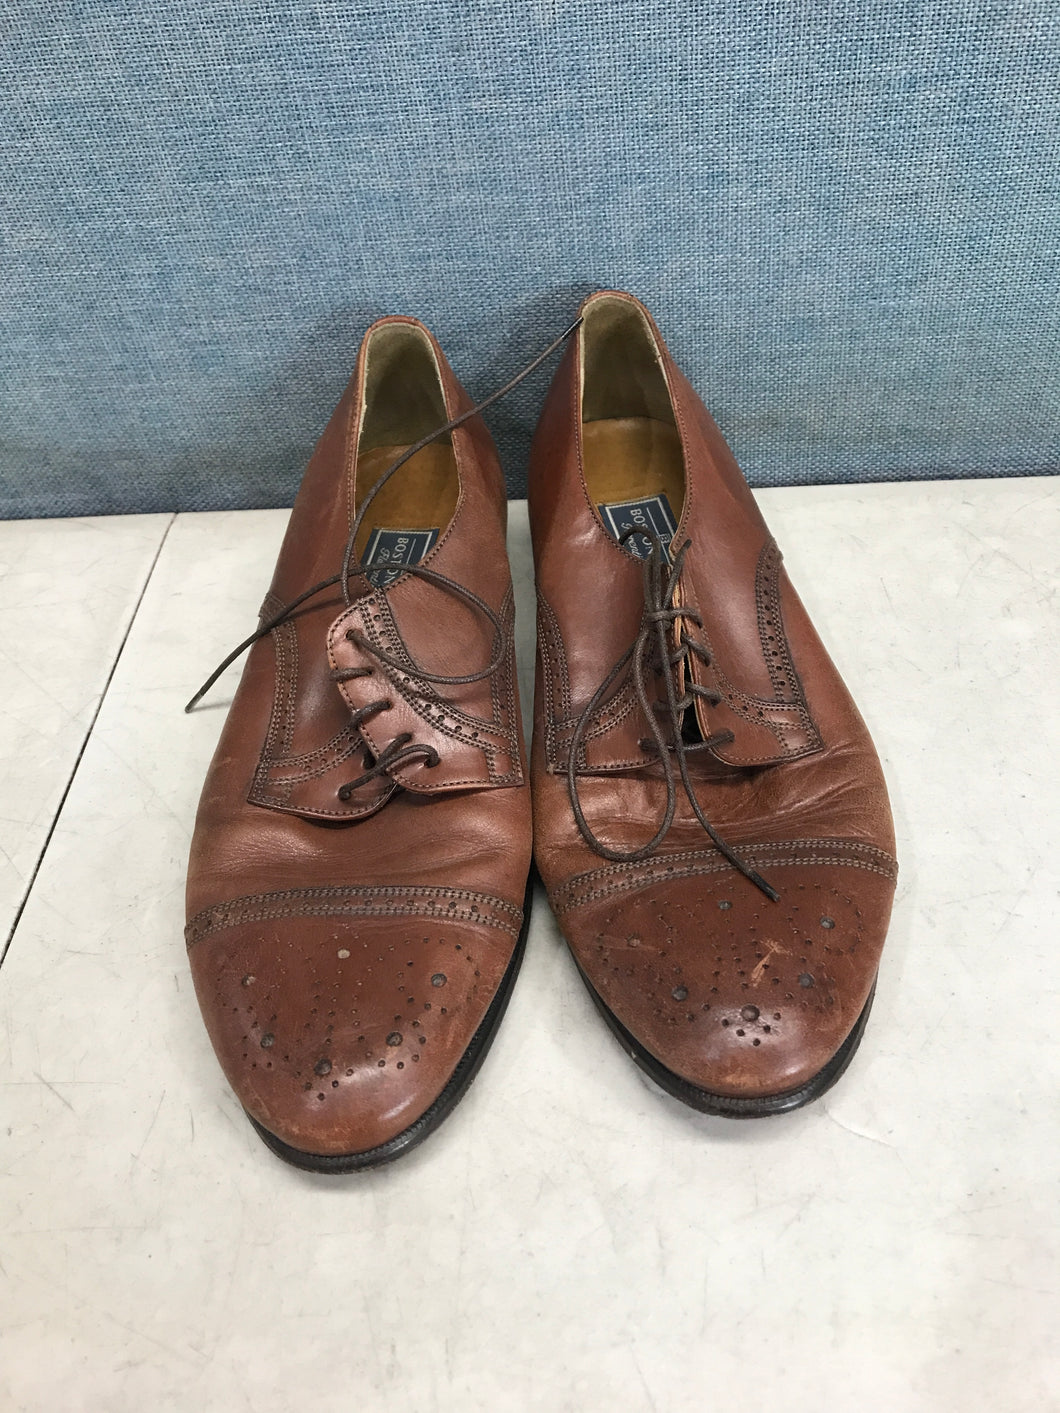 Bostonian Men's Brown Shoes Size 8.5M